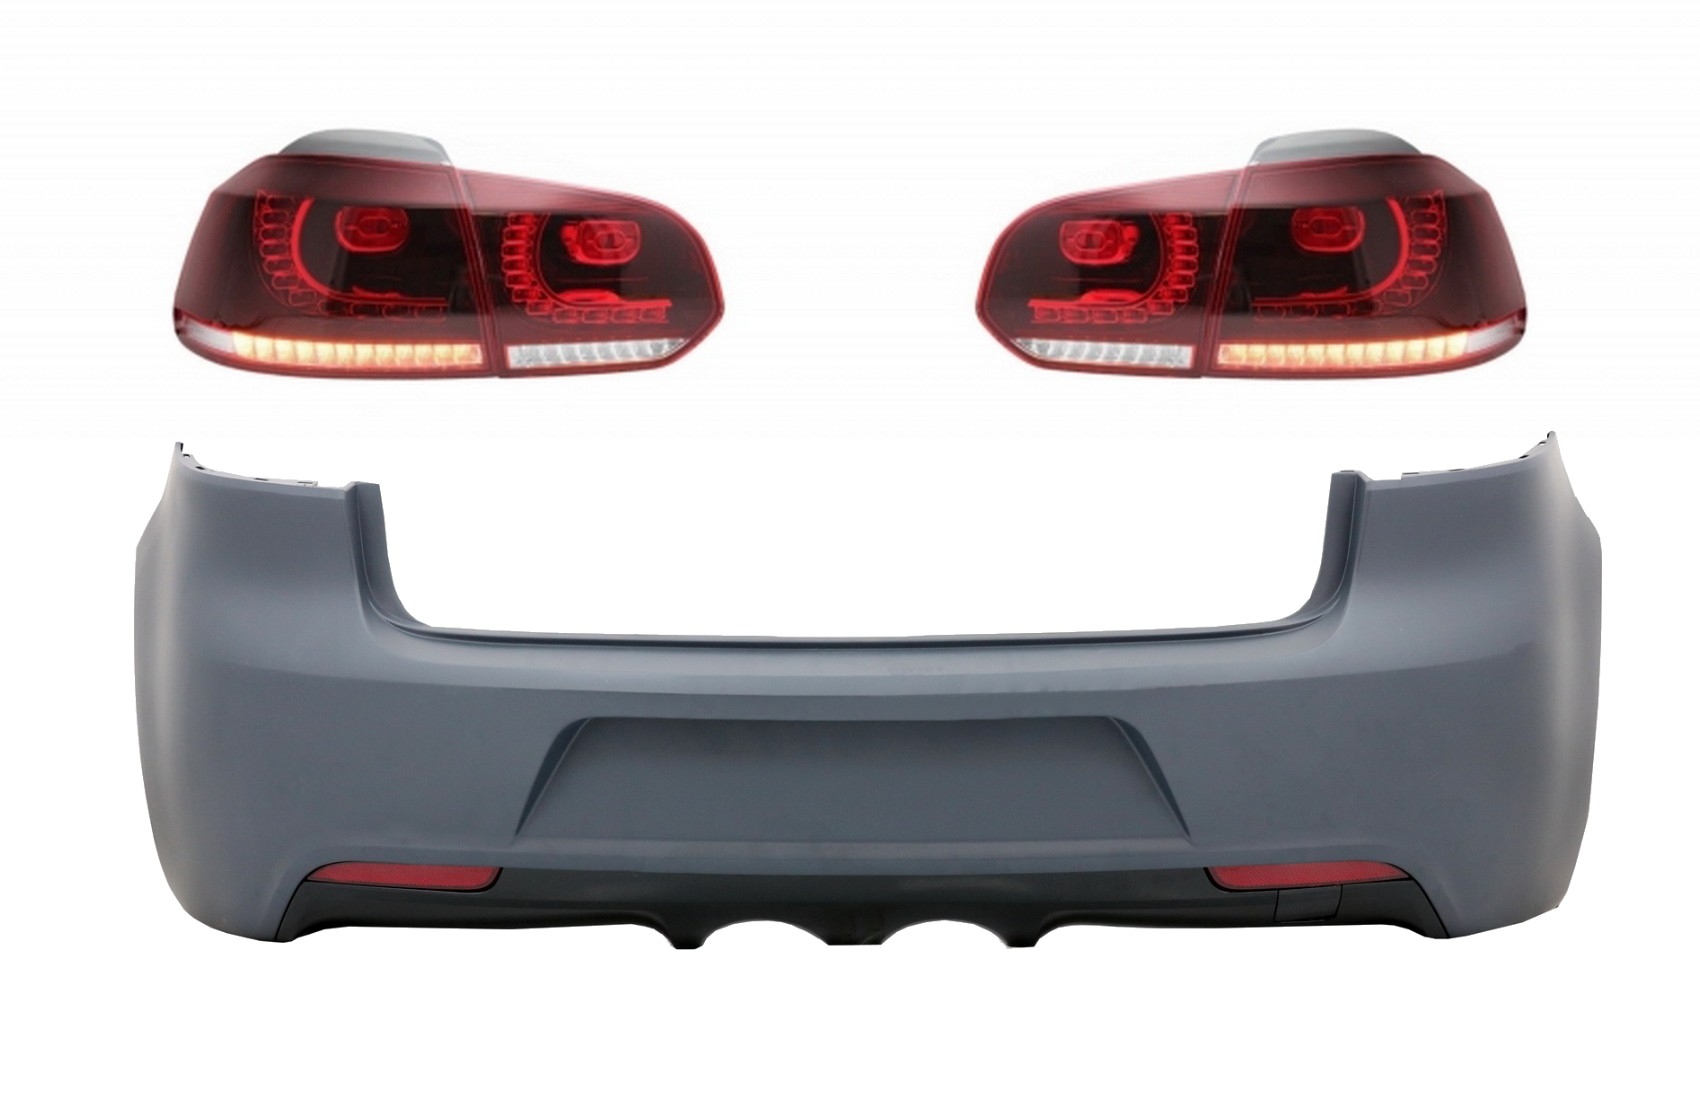 Hátsó lökhárító hátsó lámpákkal Full LED VW Golf VI (2008-2013) R20 Design Cherry Red (LHD és RHD) számára